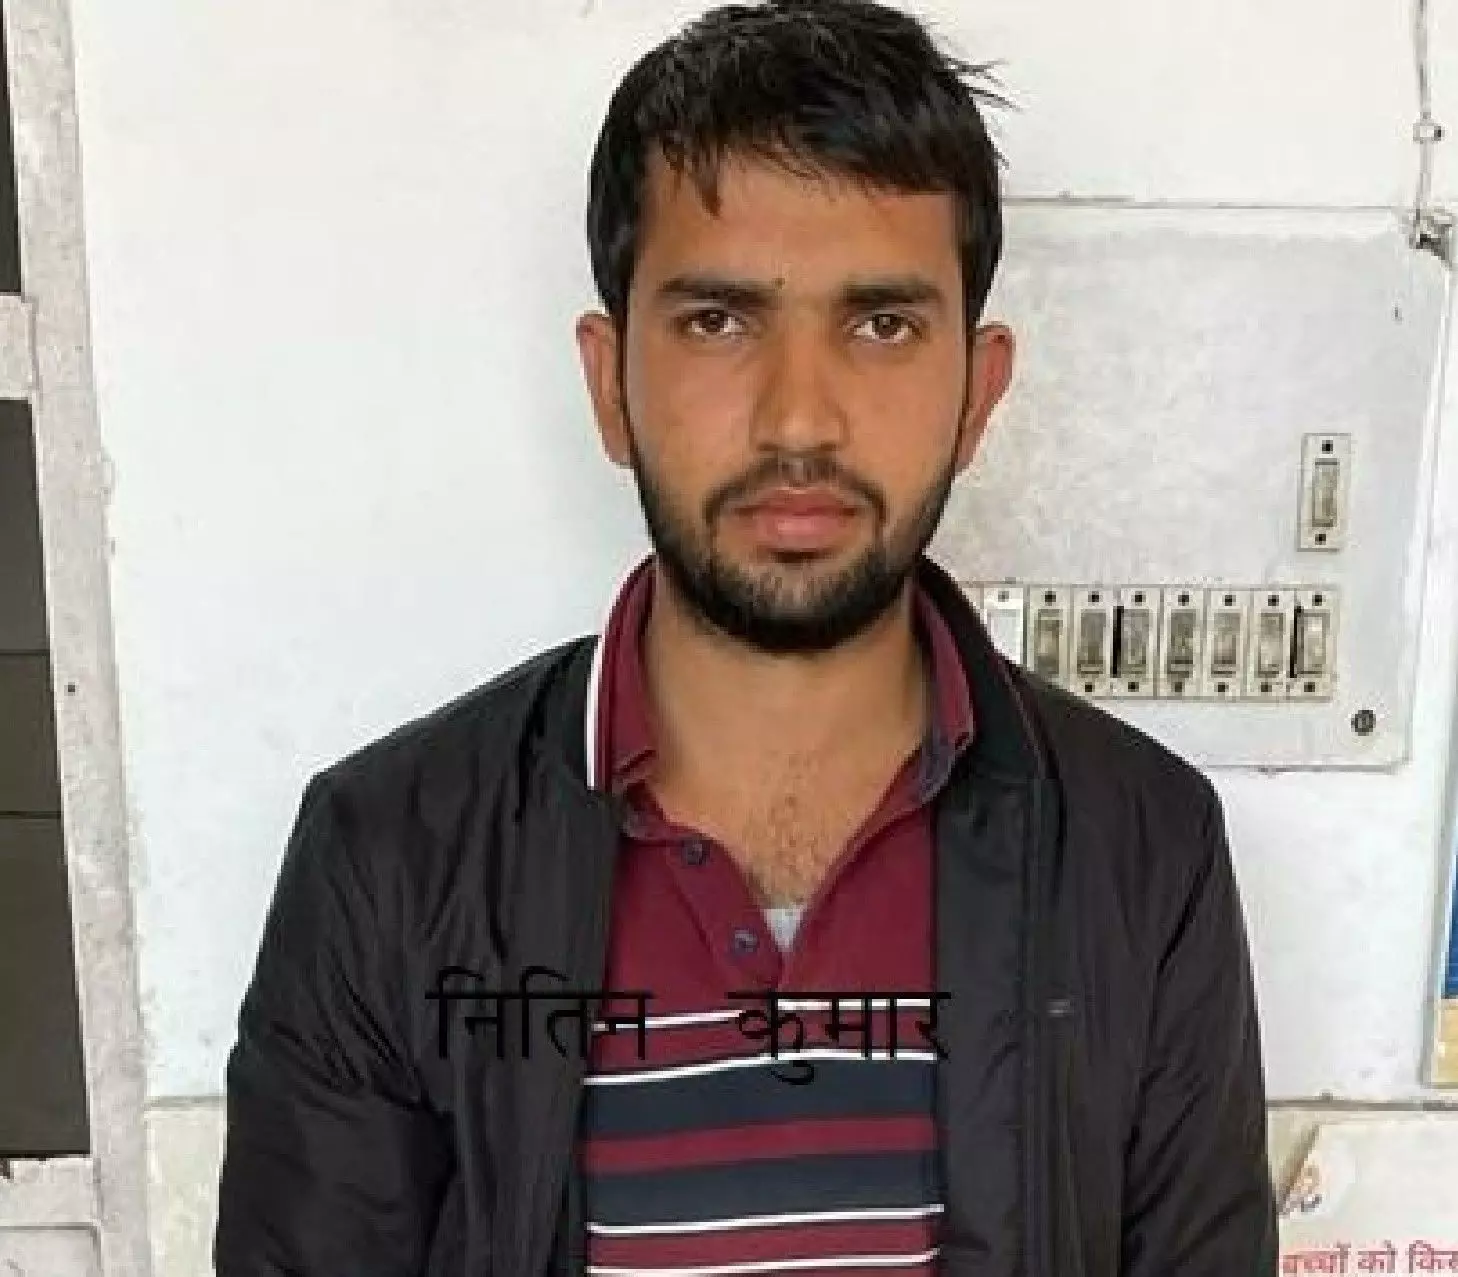 Delhi News: दिल्ली पुलिस की आरक्षी भर्ती परीक्षा में धांधली करने वाले गिरोह का इनामी अभियुक्त गिरफ्तार